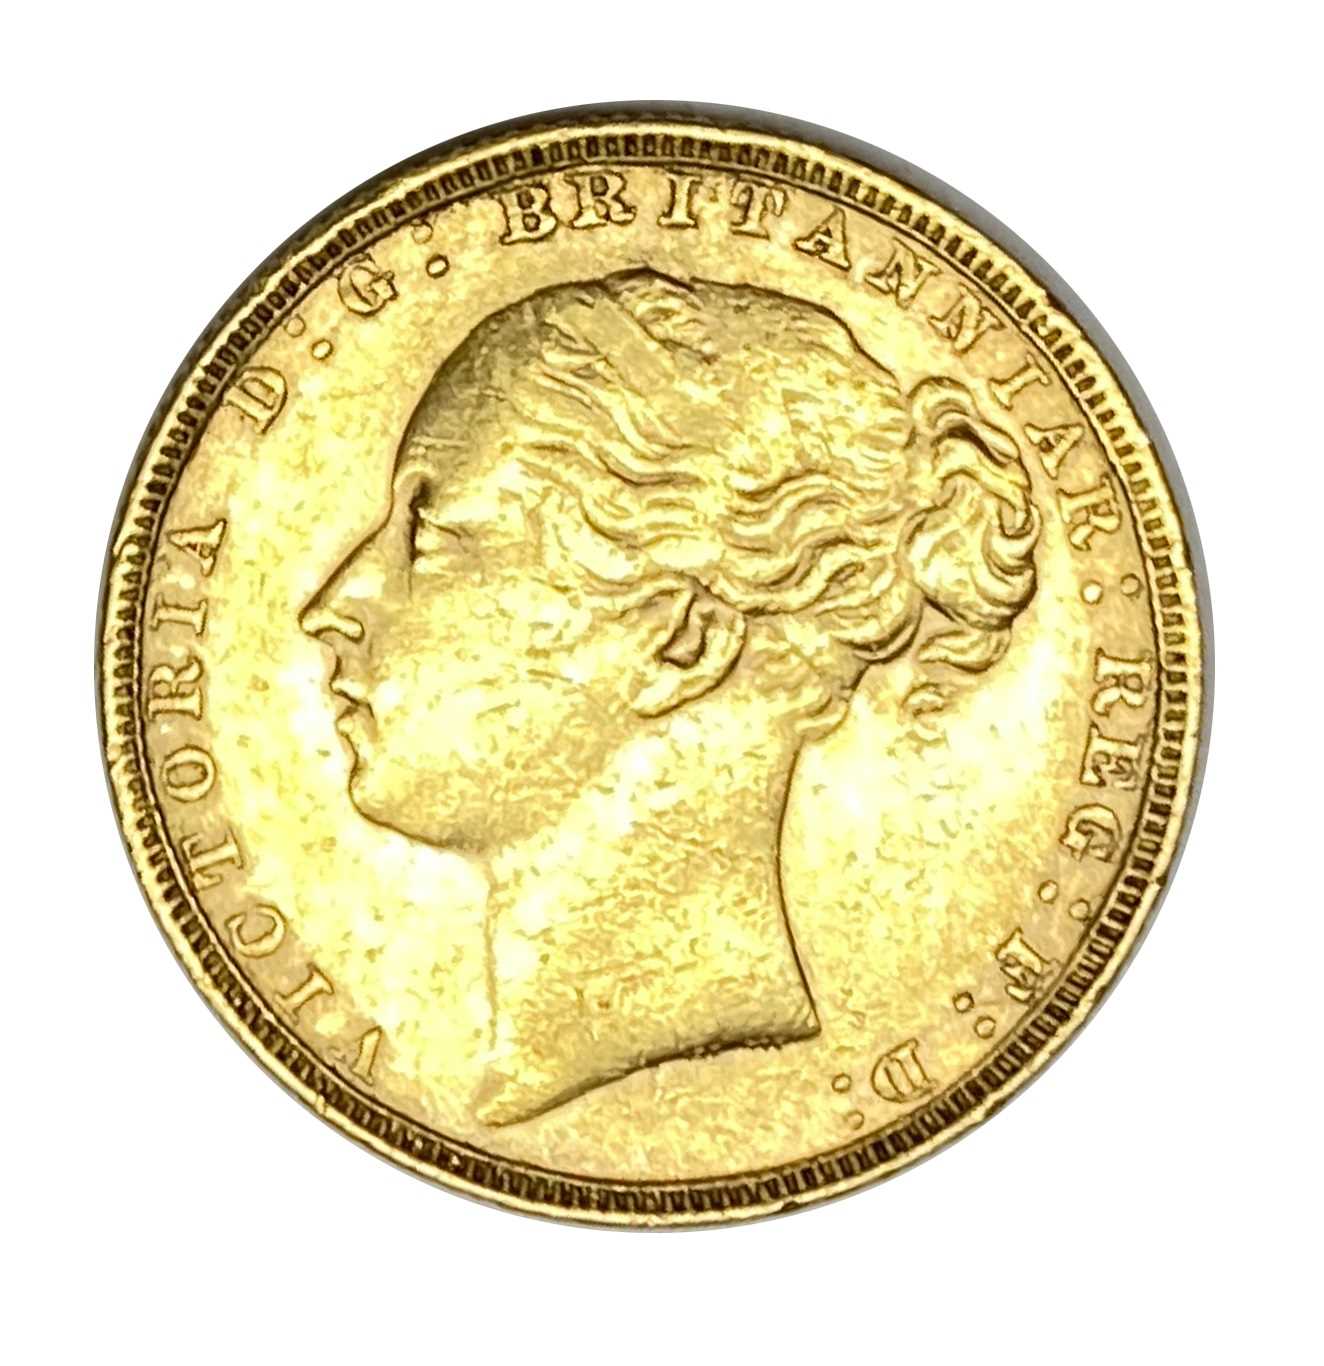 Lot 3 - Queen Victoria gold Sovereign coin, 1880